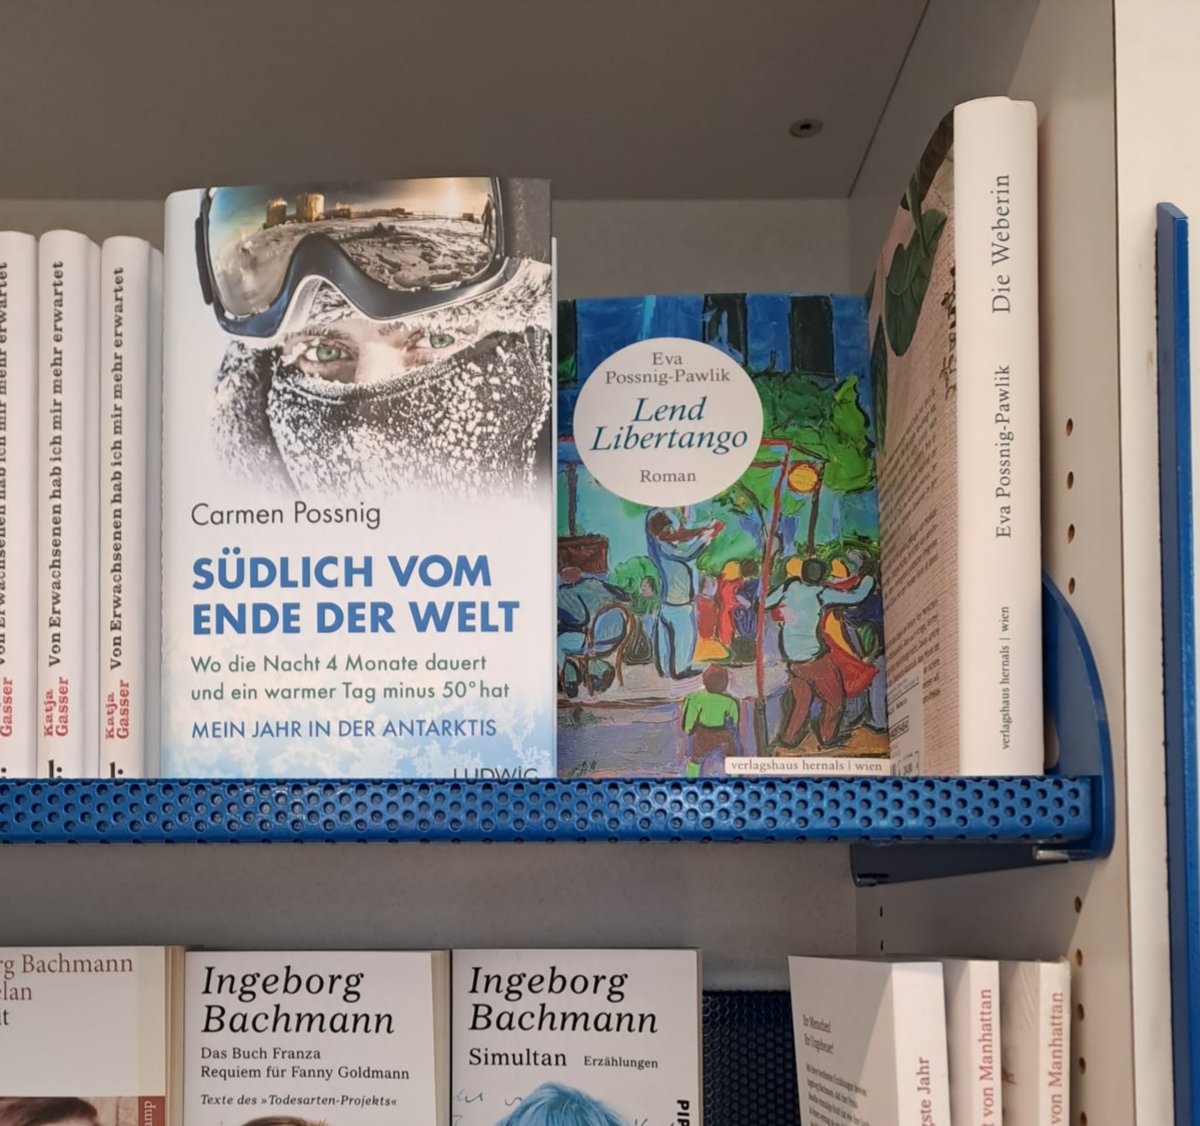 Entdeckt in einer Klagenfurter Buchhandlung - die beiden Romane meiner Mutter neben meinen Erzählungen aus der Antarktis 😍 und noch dazu in Gesellschaft von Ingeborg Bachmann! #ConcordiaStation #Antarktis